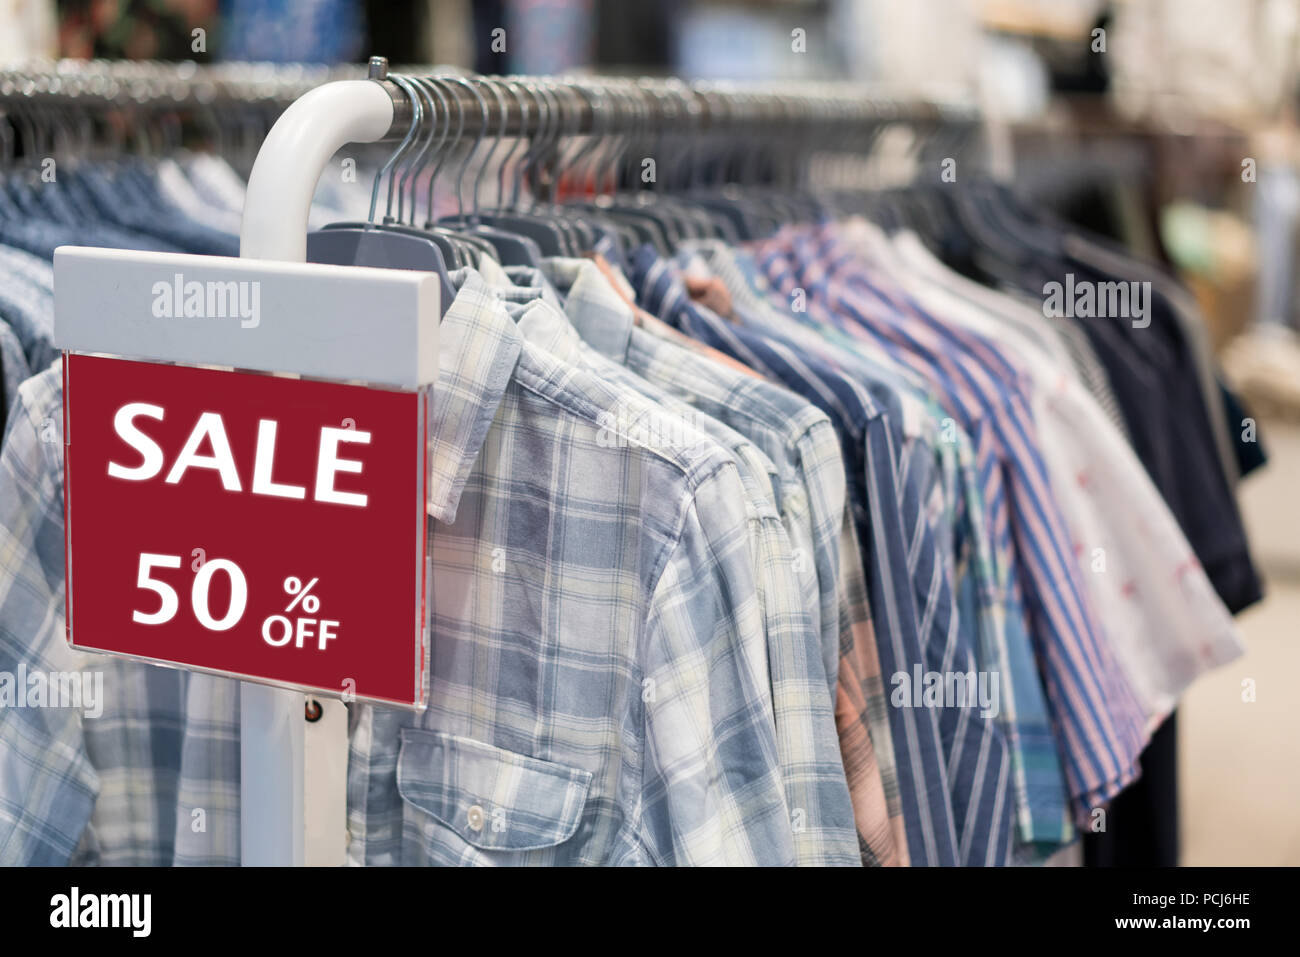 Verkauf einkaufen, Verkauf 50% off-label-Schild Aufkleber vor shirt shop, verkauf Shopping Season für Rabatt Display Marketing Geschäft advertiseme Stockfoto